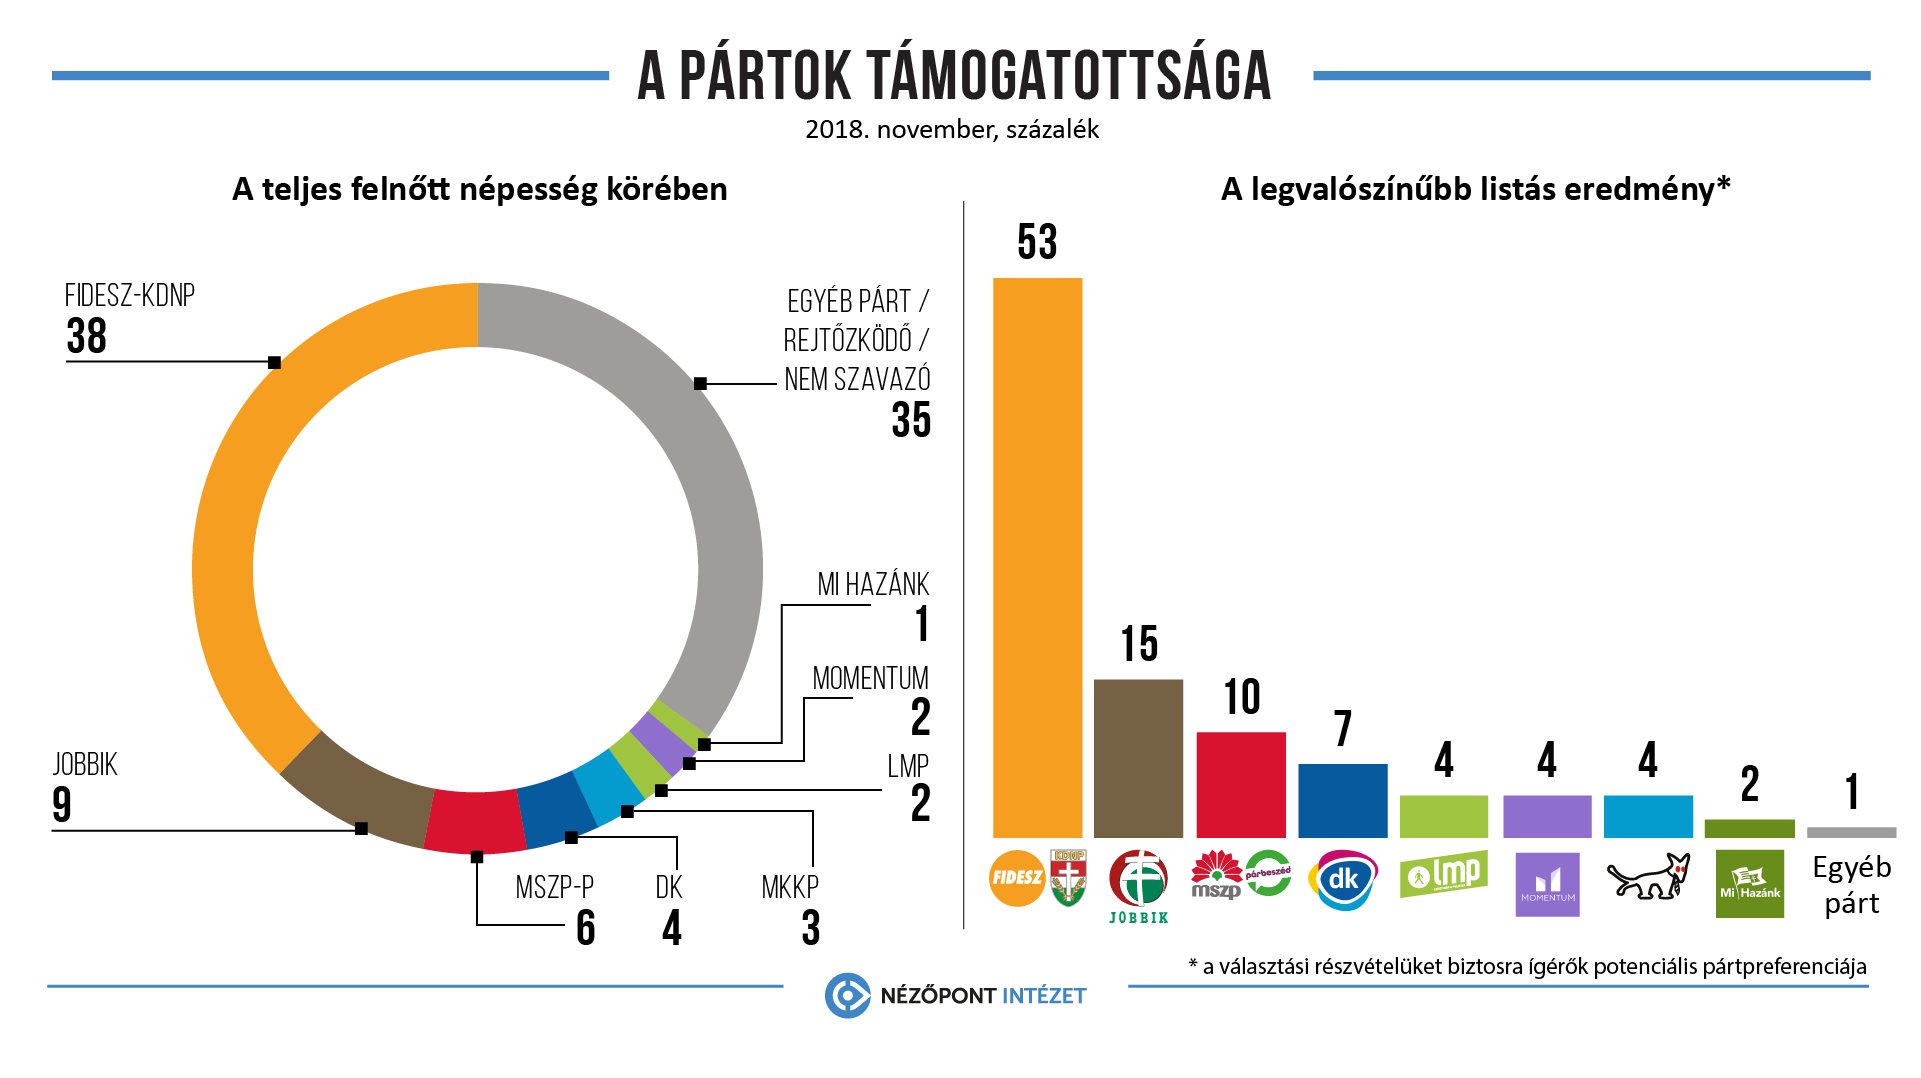 Erősödött a Fidesz, tovább gyengült a Jobbik